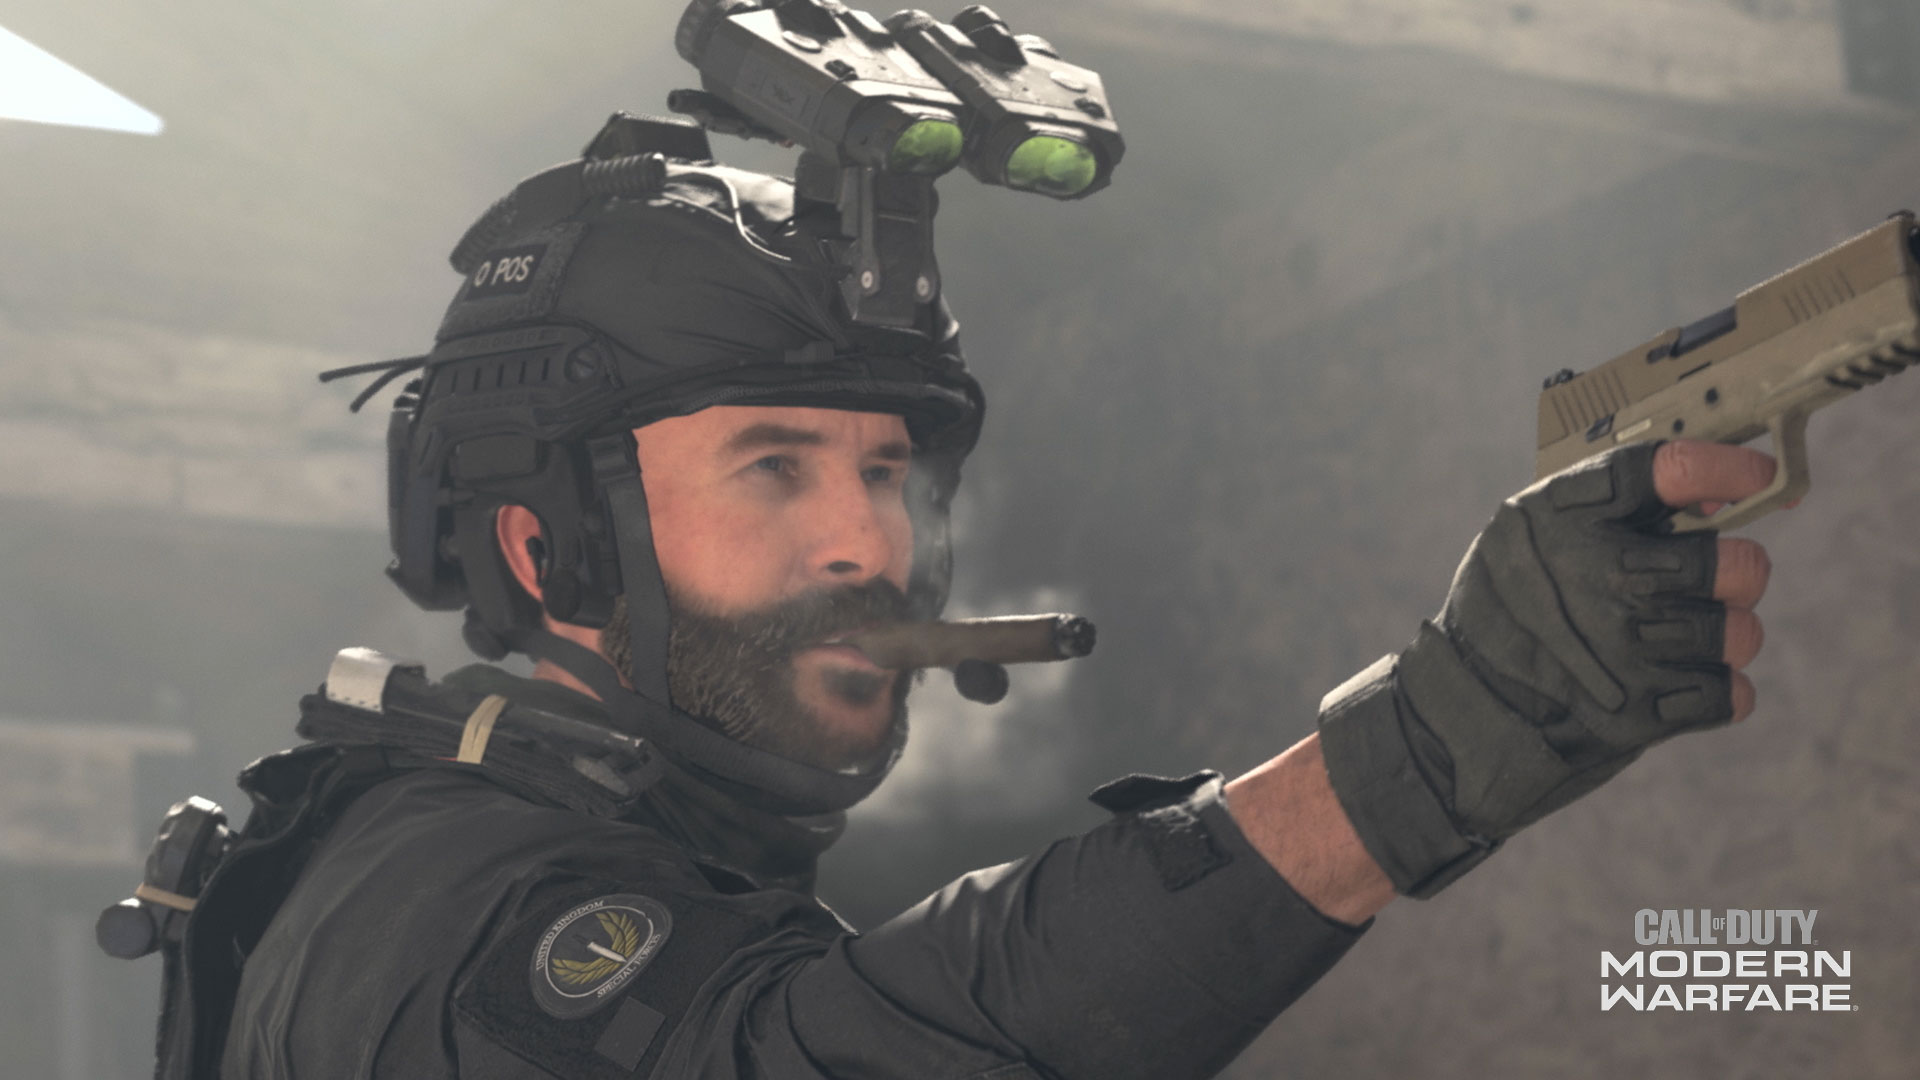 Call of Duty: Advanced Warfare sequel reportedly in development